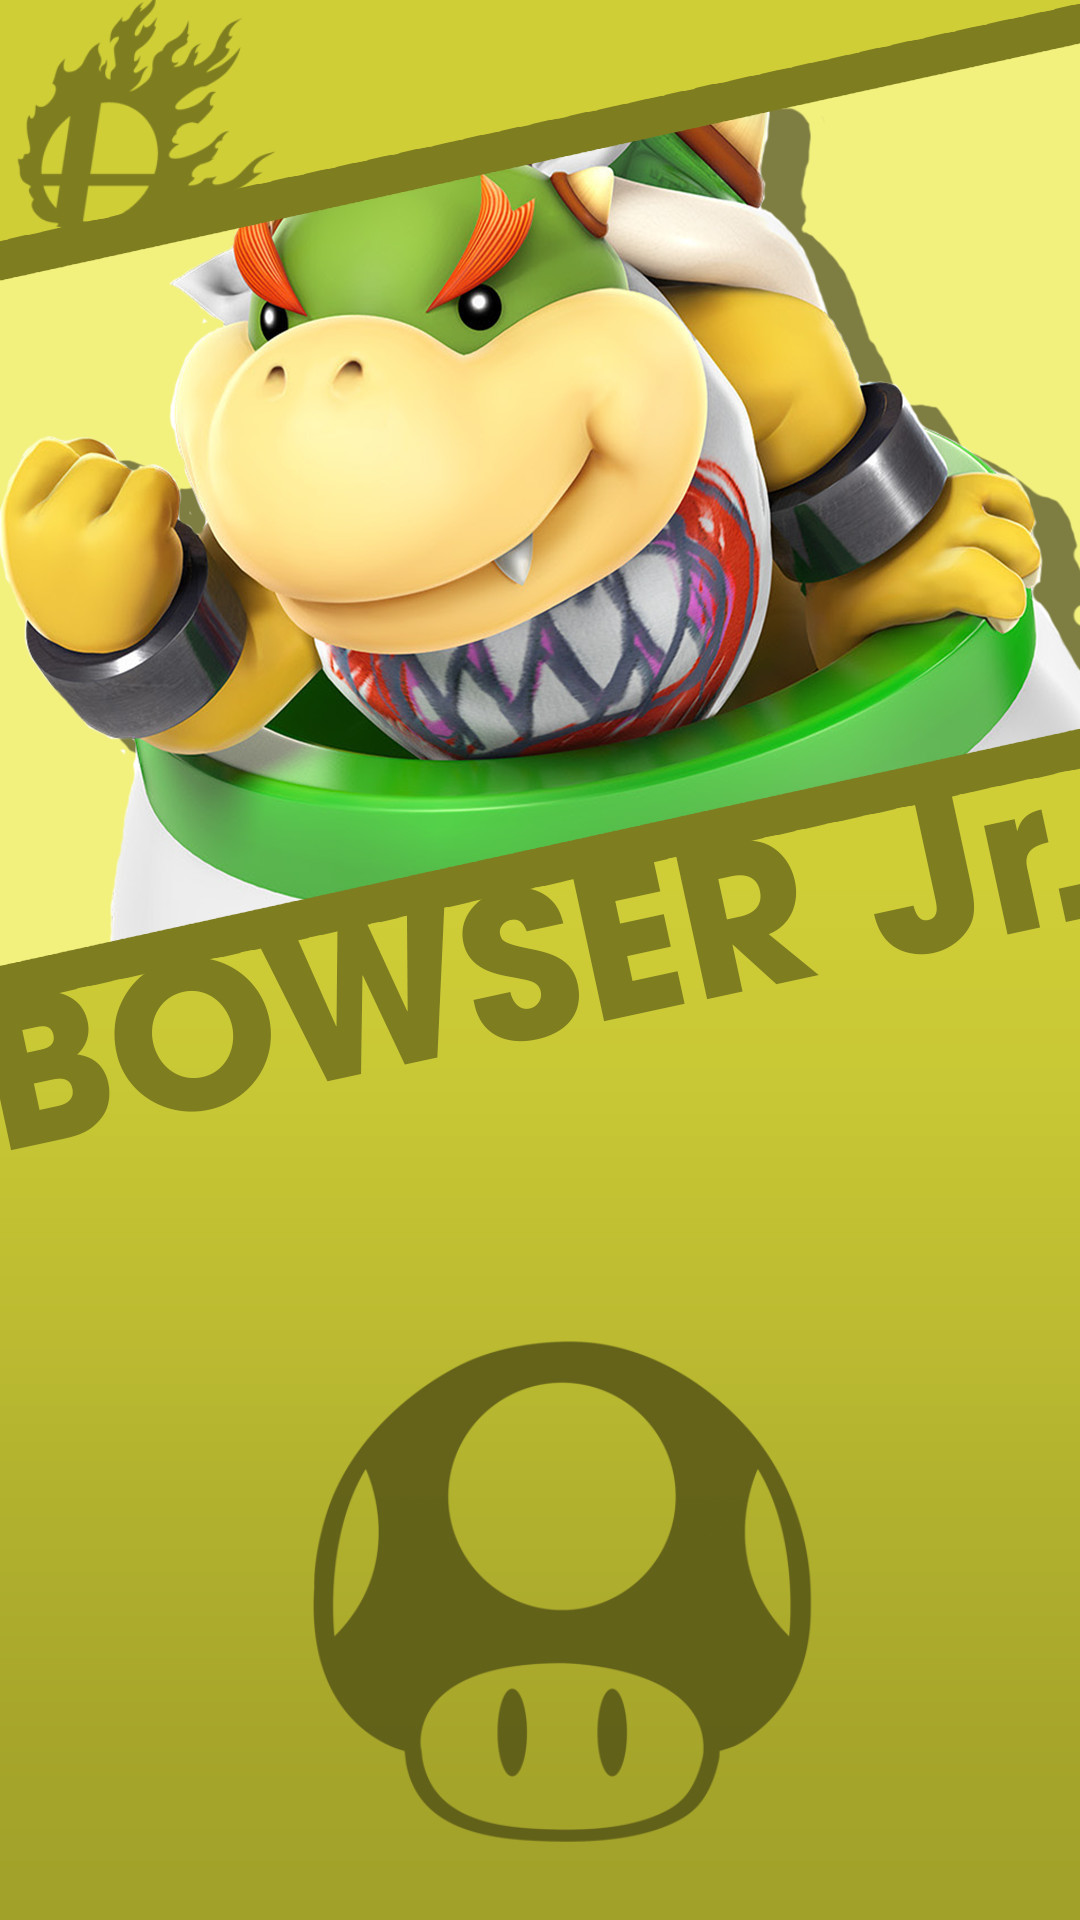 Download Bowser 3d Model, Bowser 4 8 2 Wallpaper - Bowser Jr Smash Bros , HD Wallpaper & Backgrounds